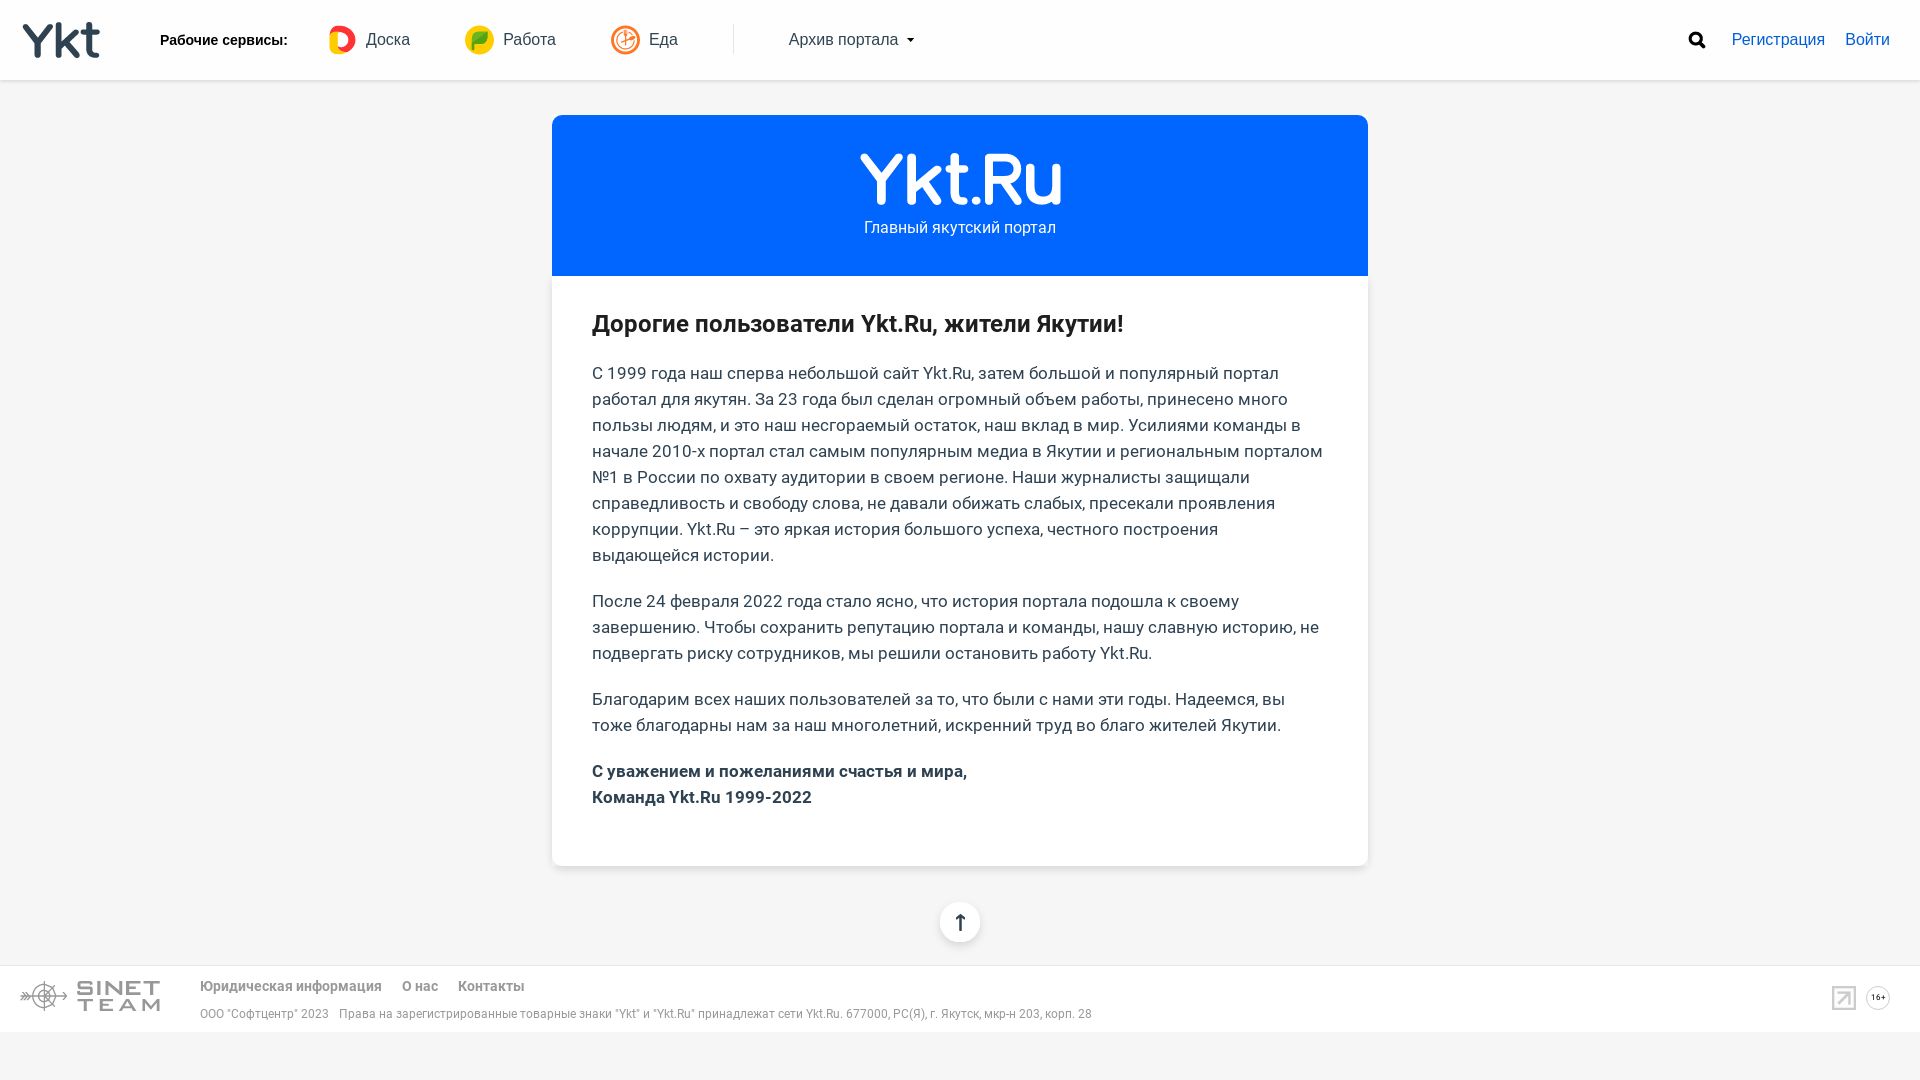 Estado web ykt.ru está   ONLINE